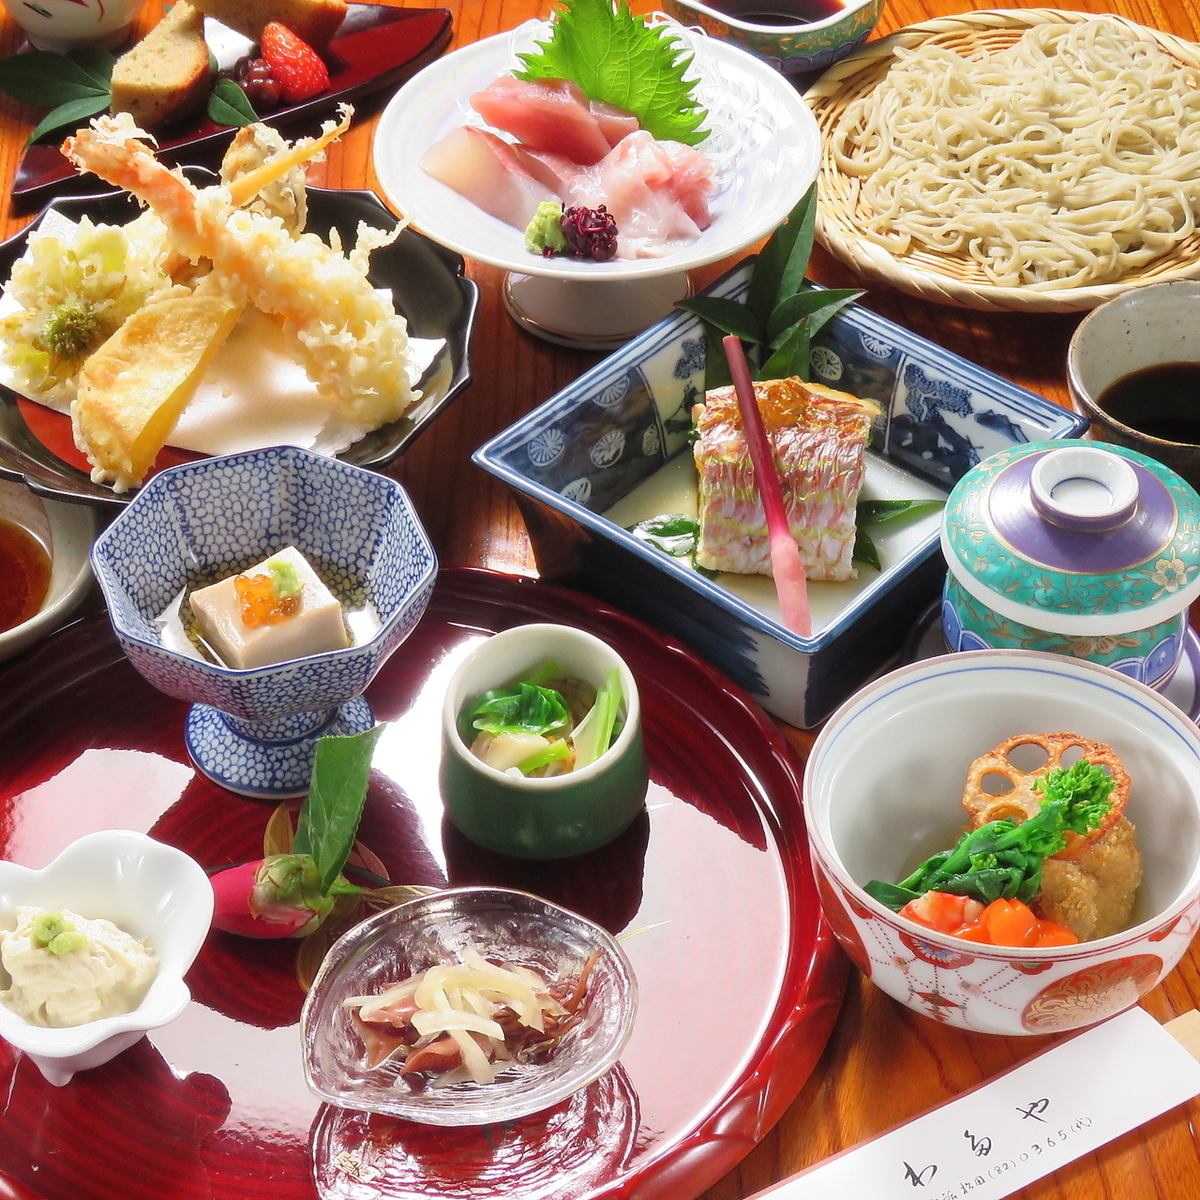 일본식 점내는 분위기가 좋고, 가족이나 동료와의 식사에도 최적◎